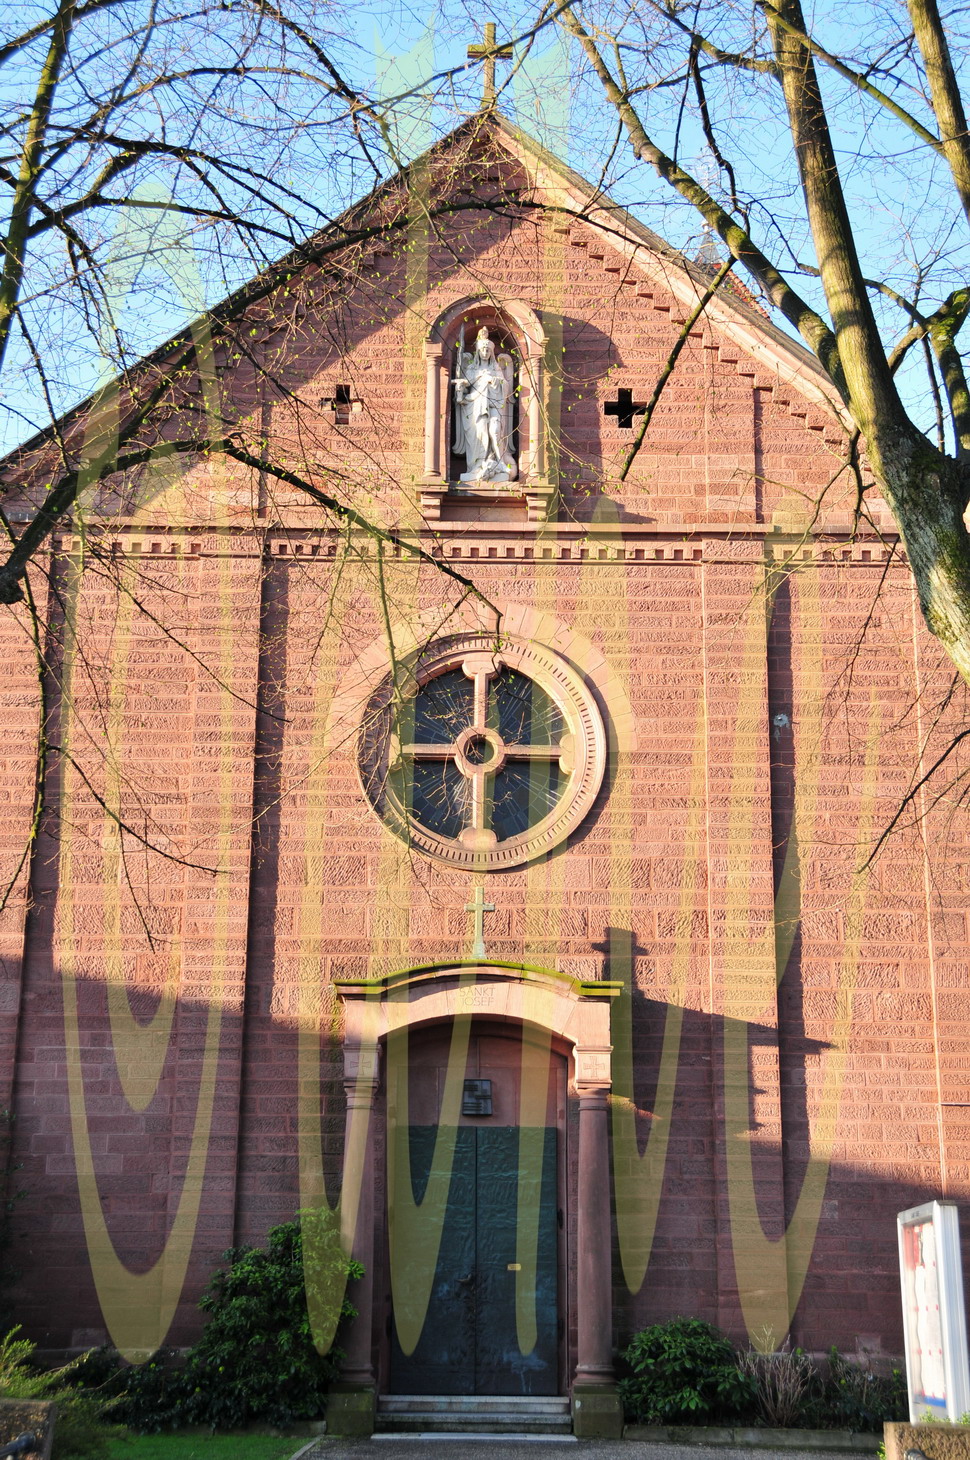 Josefkirche